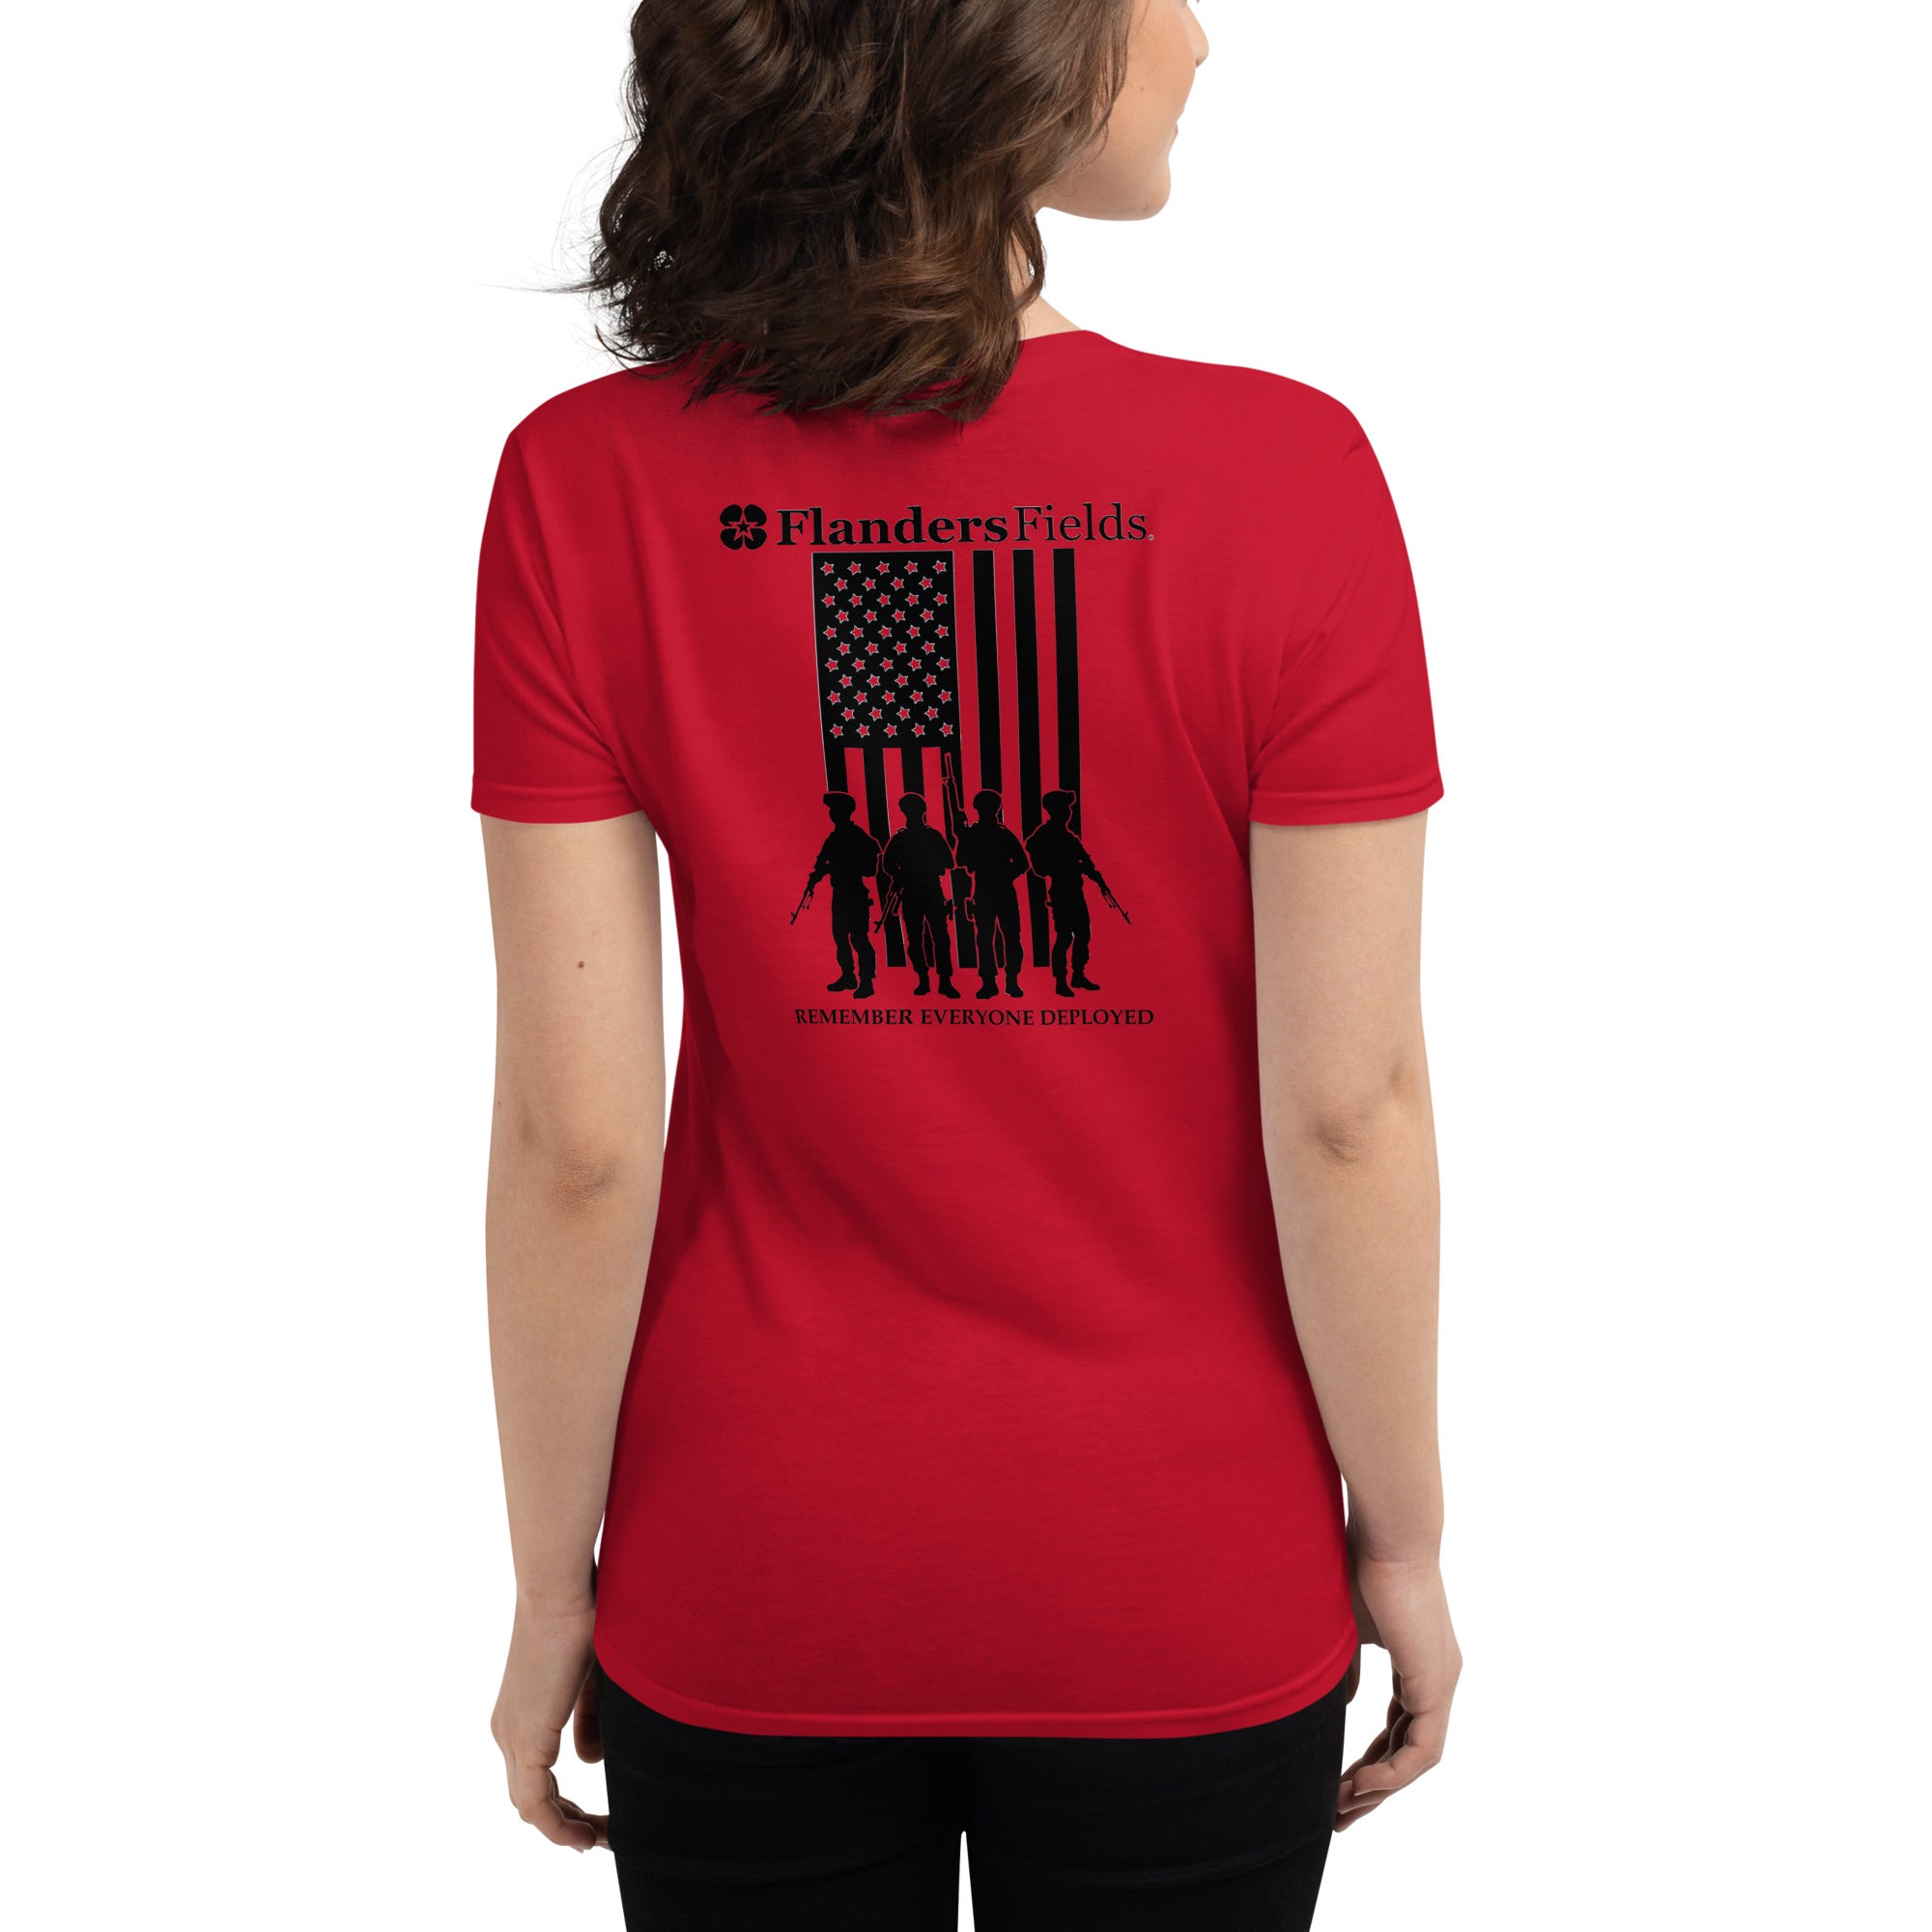 RED Women's short sleeve t-shirt